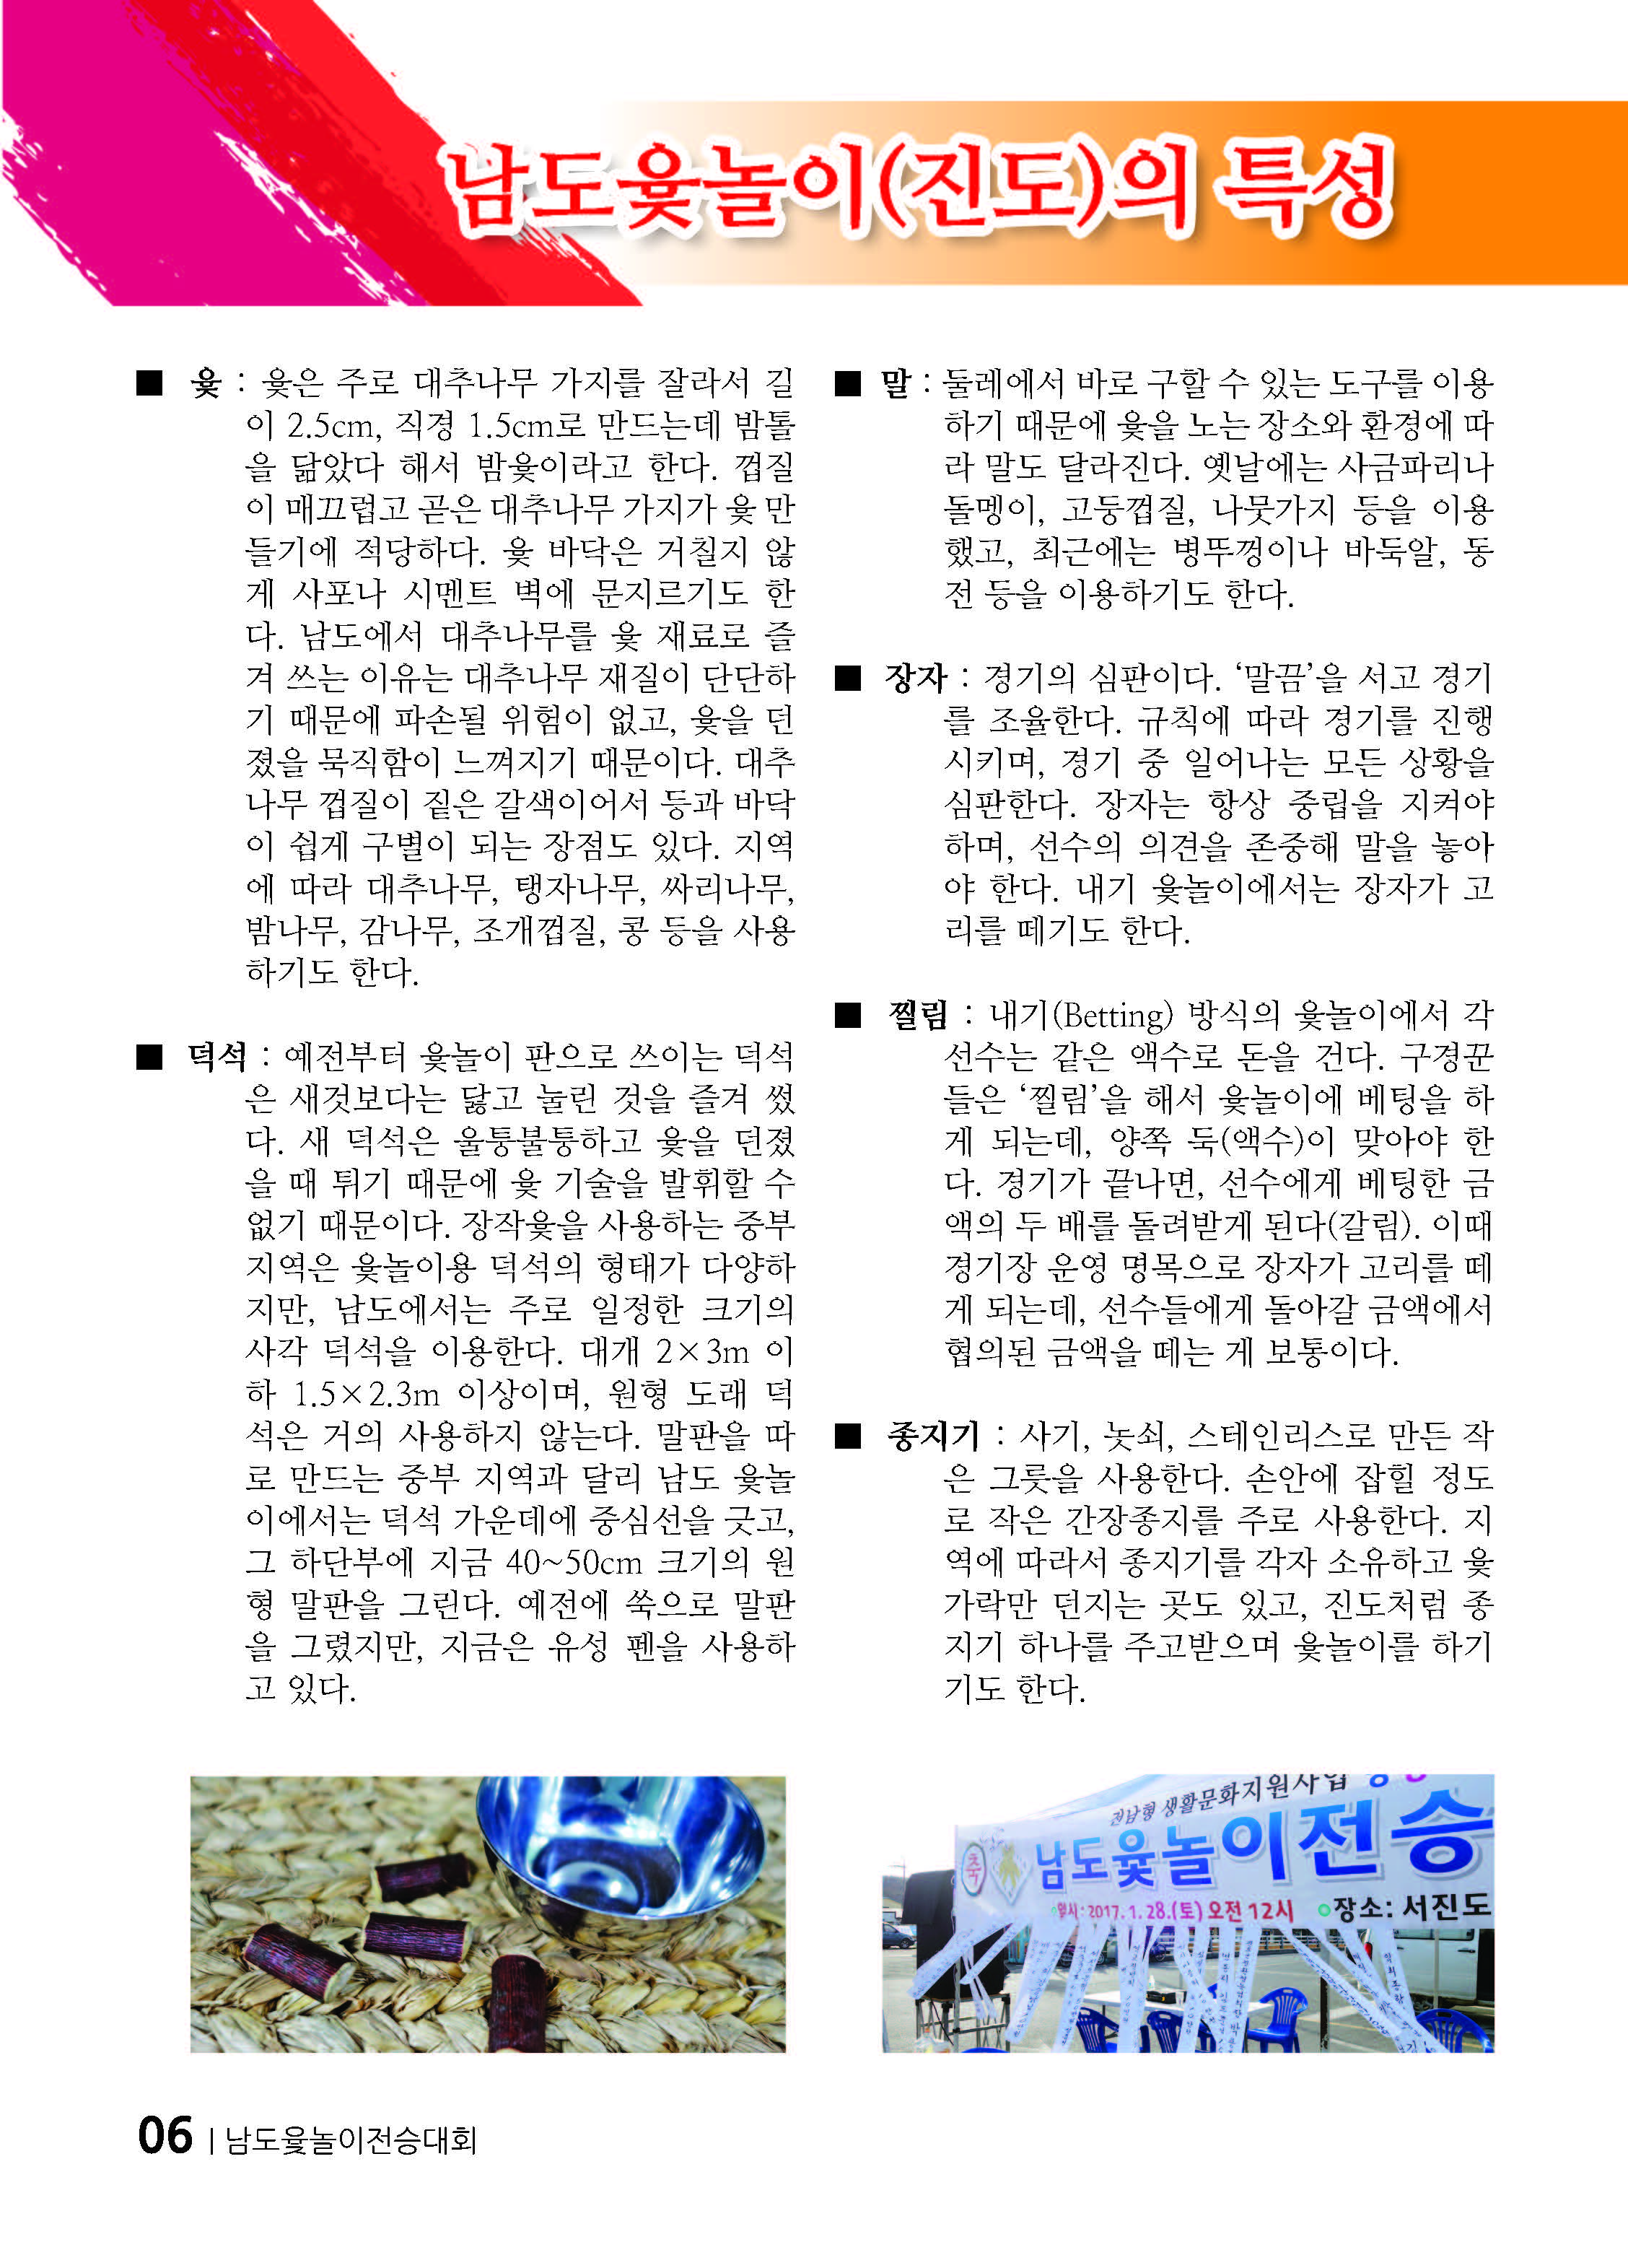 설날맞이~~ 제1회 남도윷놀이전승대회 보고 2 첨부#1